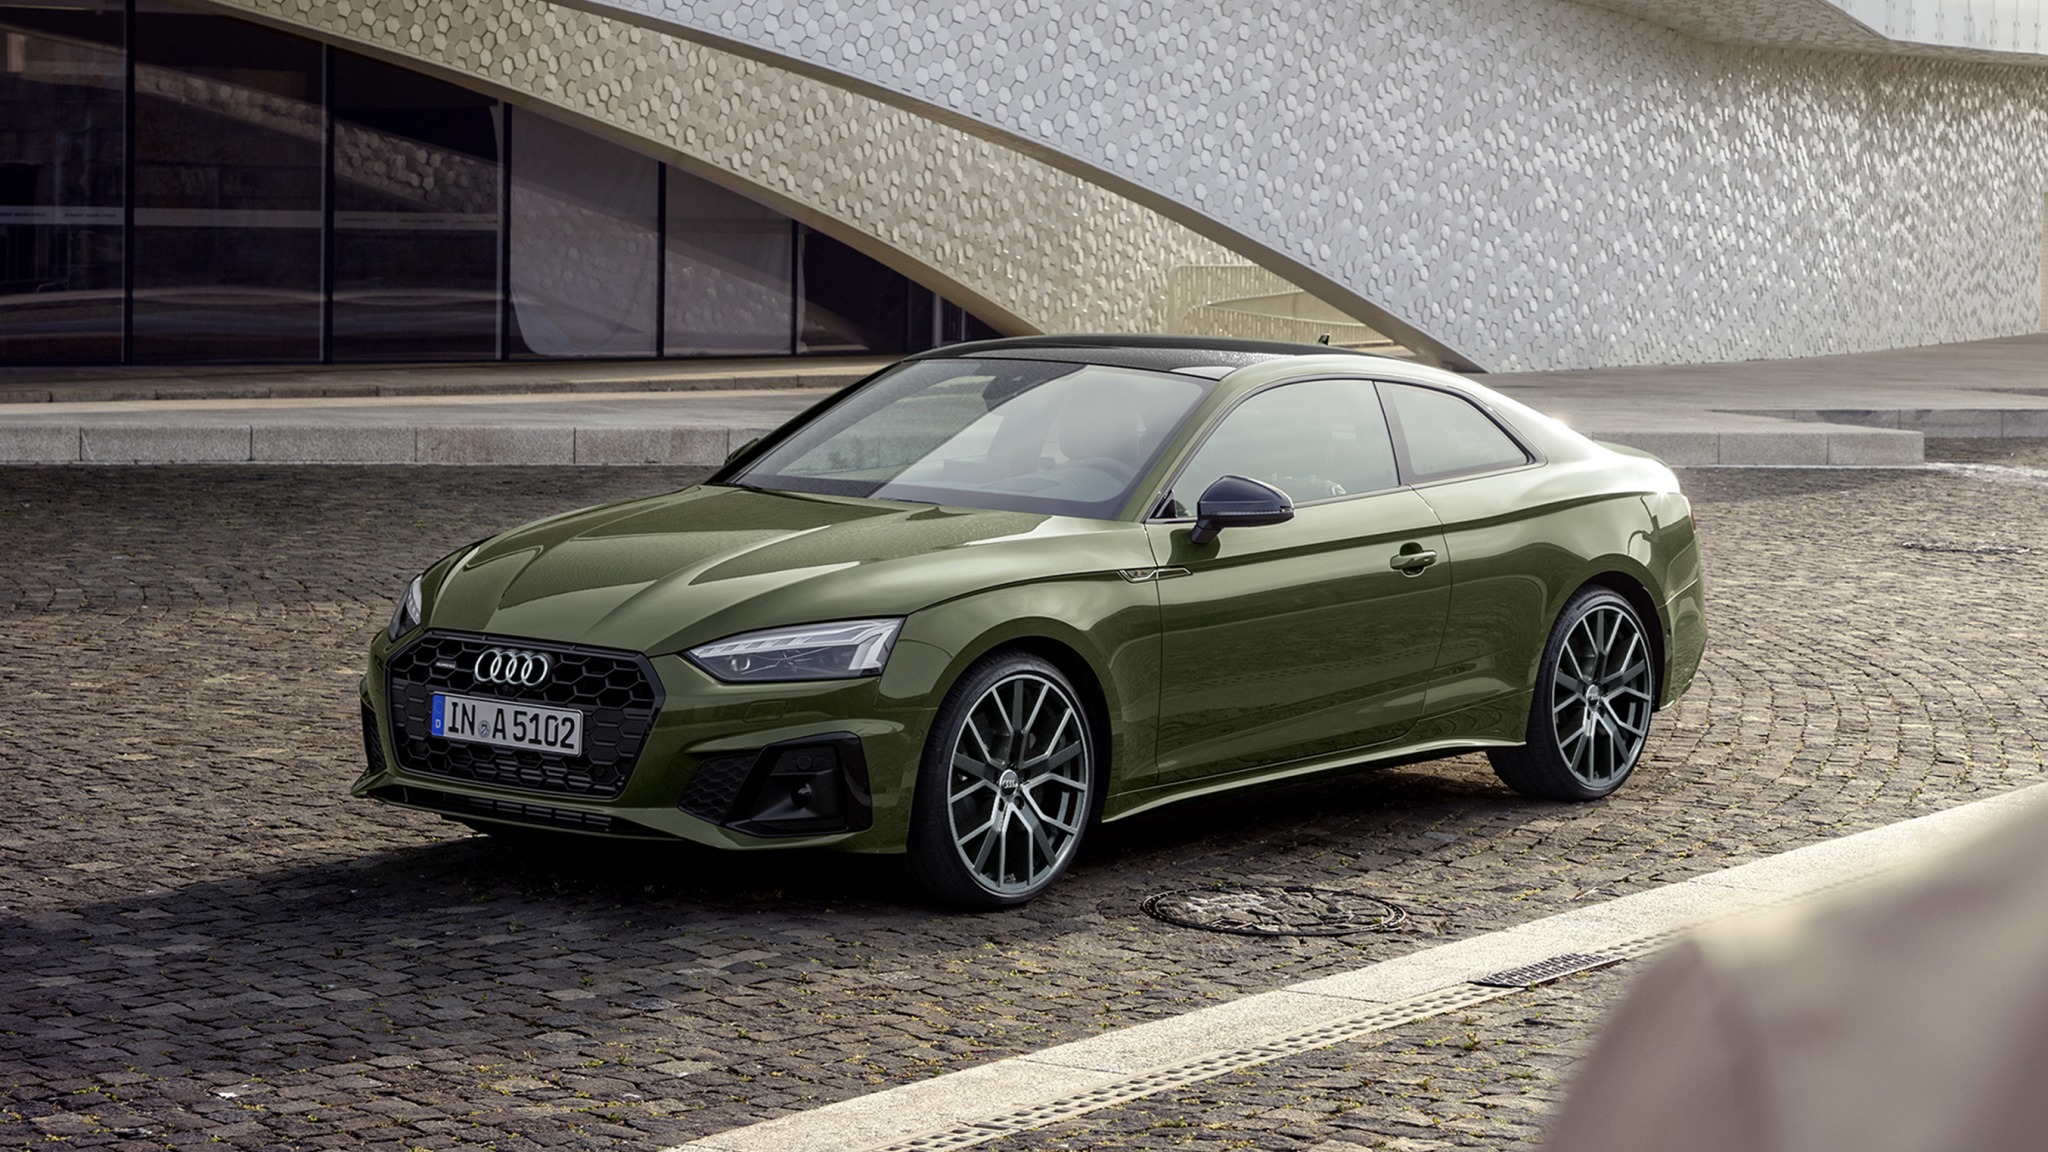 Audi Q5 - Solitaire Automotive Group